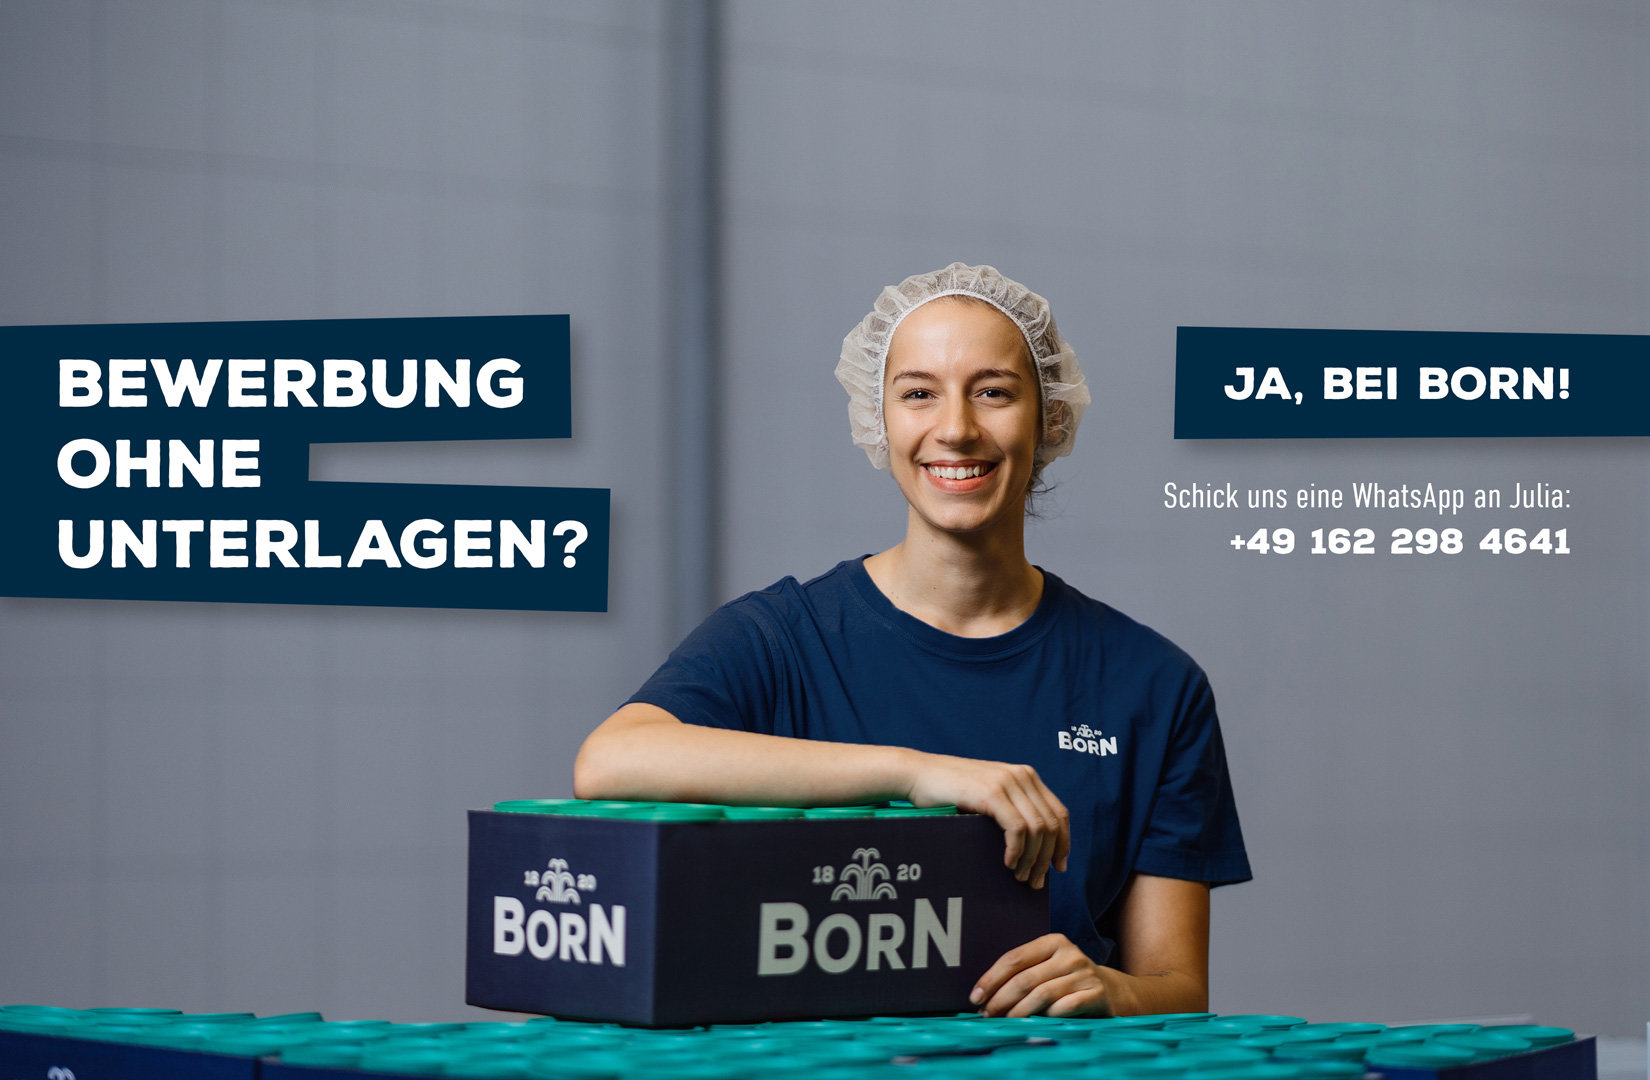 Jobs und Ausbildungen bei BORN Senf in Thüringen. Auch Ferienjobs und Praktik bieten wir an. Einfach ohne Unterlagen bewerben